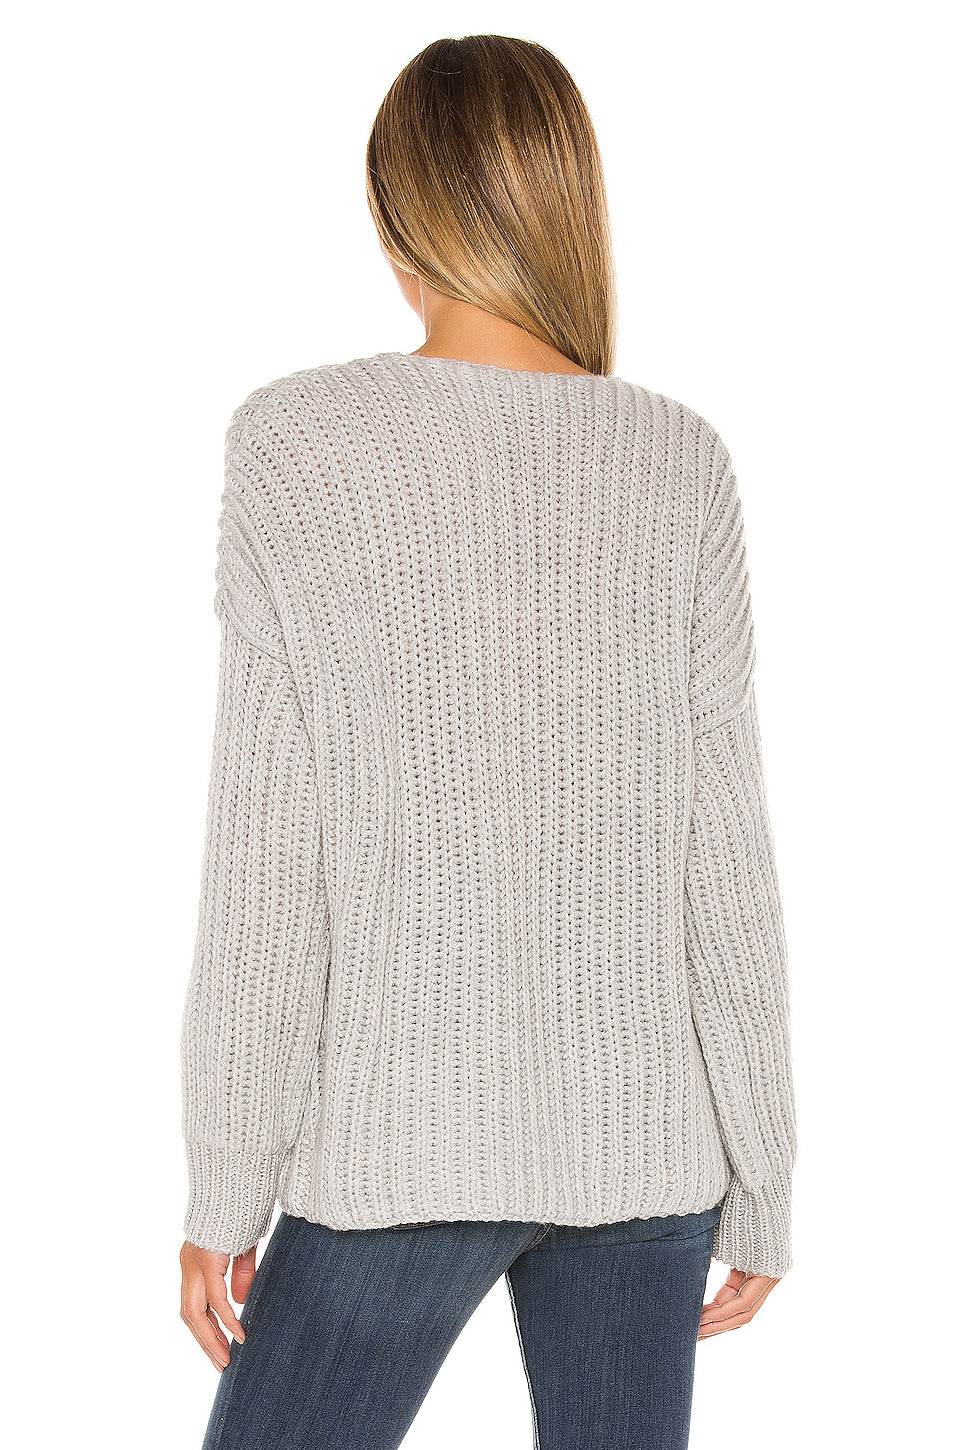 Helen Wrap Sweater in LIGHT GREY